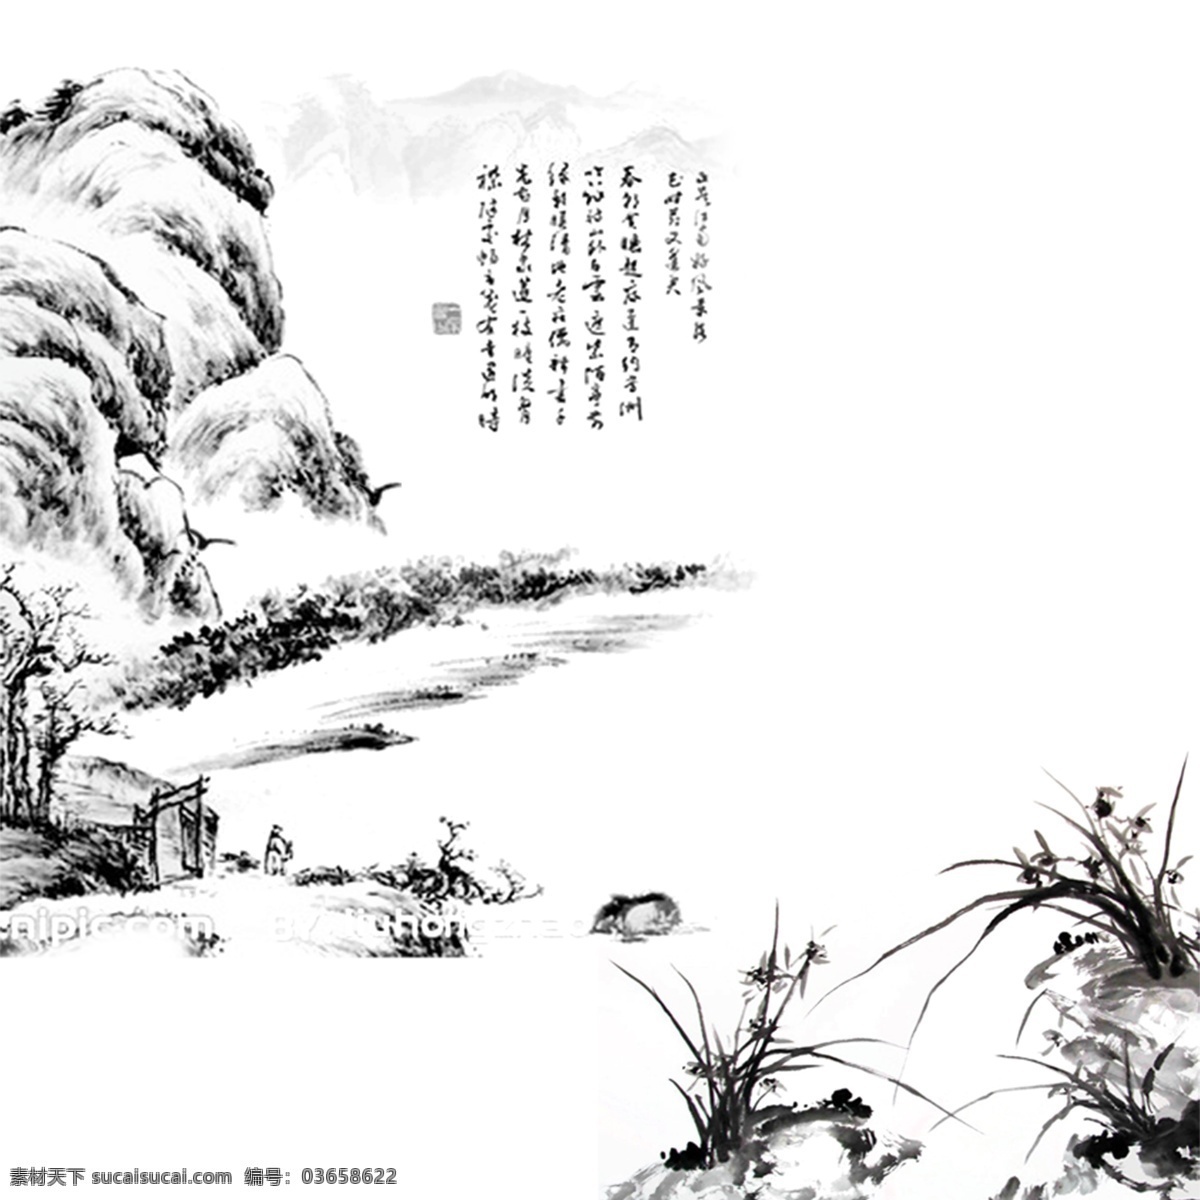 中国 风 墨色 山峰 装饰 元素 水墨画 植物 书法 国画 装饰艺术 黑色字体 草丛